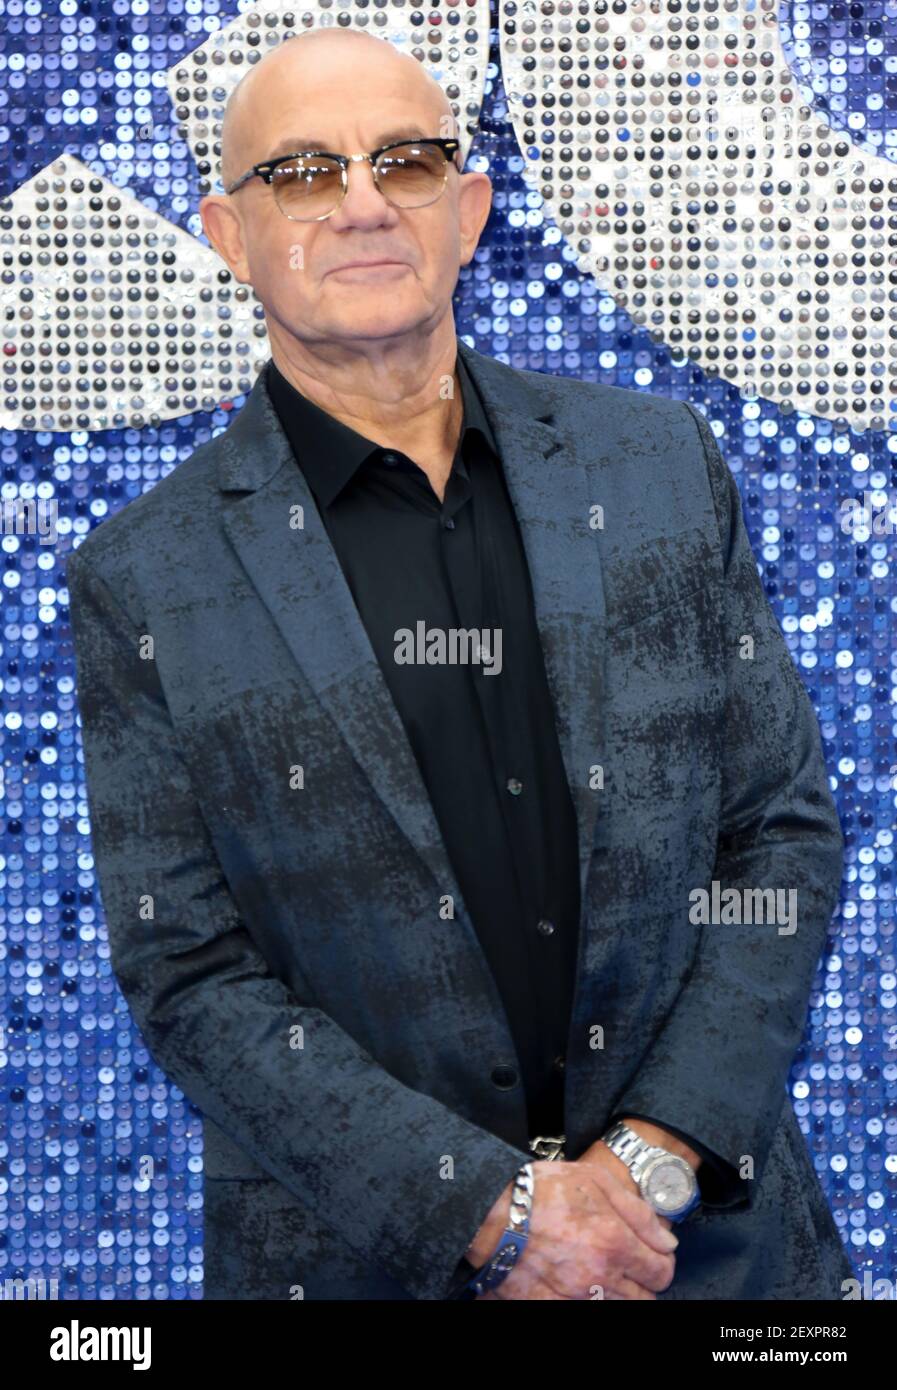 20 mai 2019 - Londres, Angleterre, Royaume-Uni - Rocketman UK Premiere photo shows: Bernie Taupin Banque D'Images